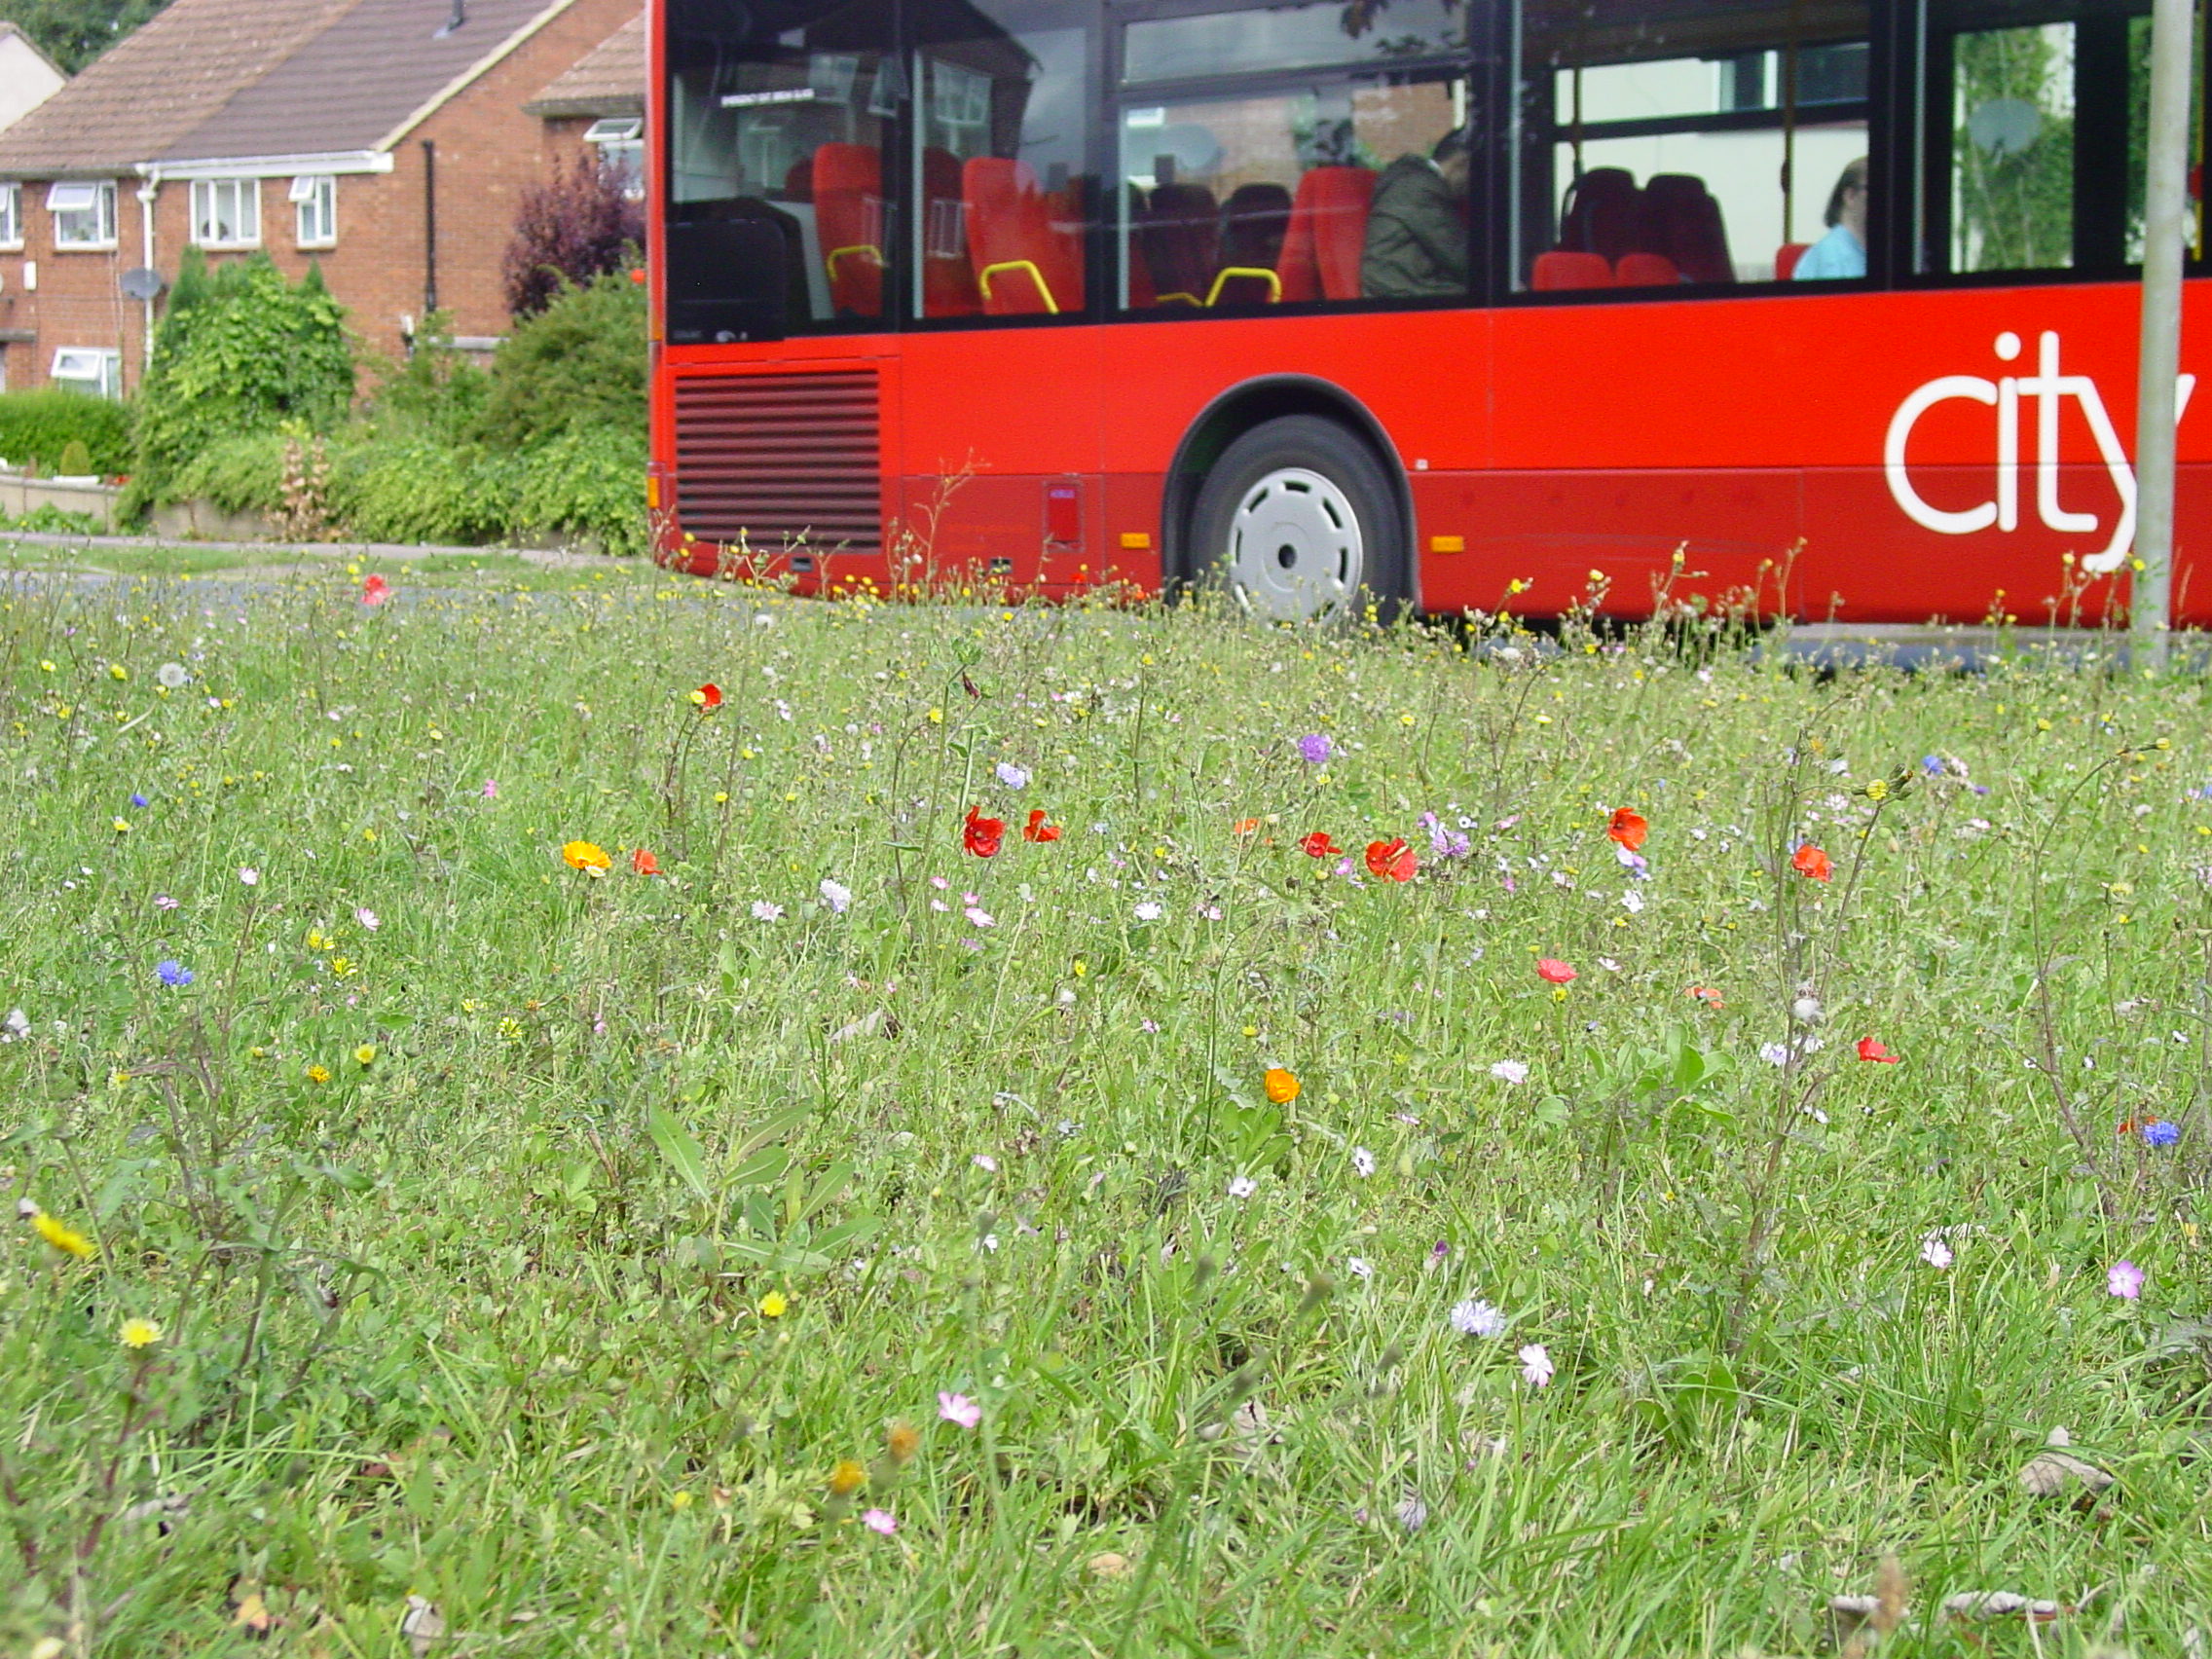 Buss passing Pinnocks meadow